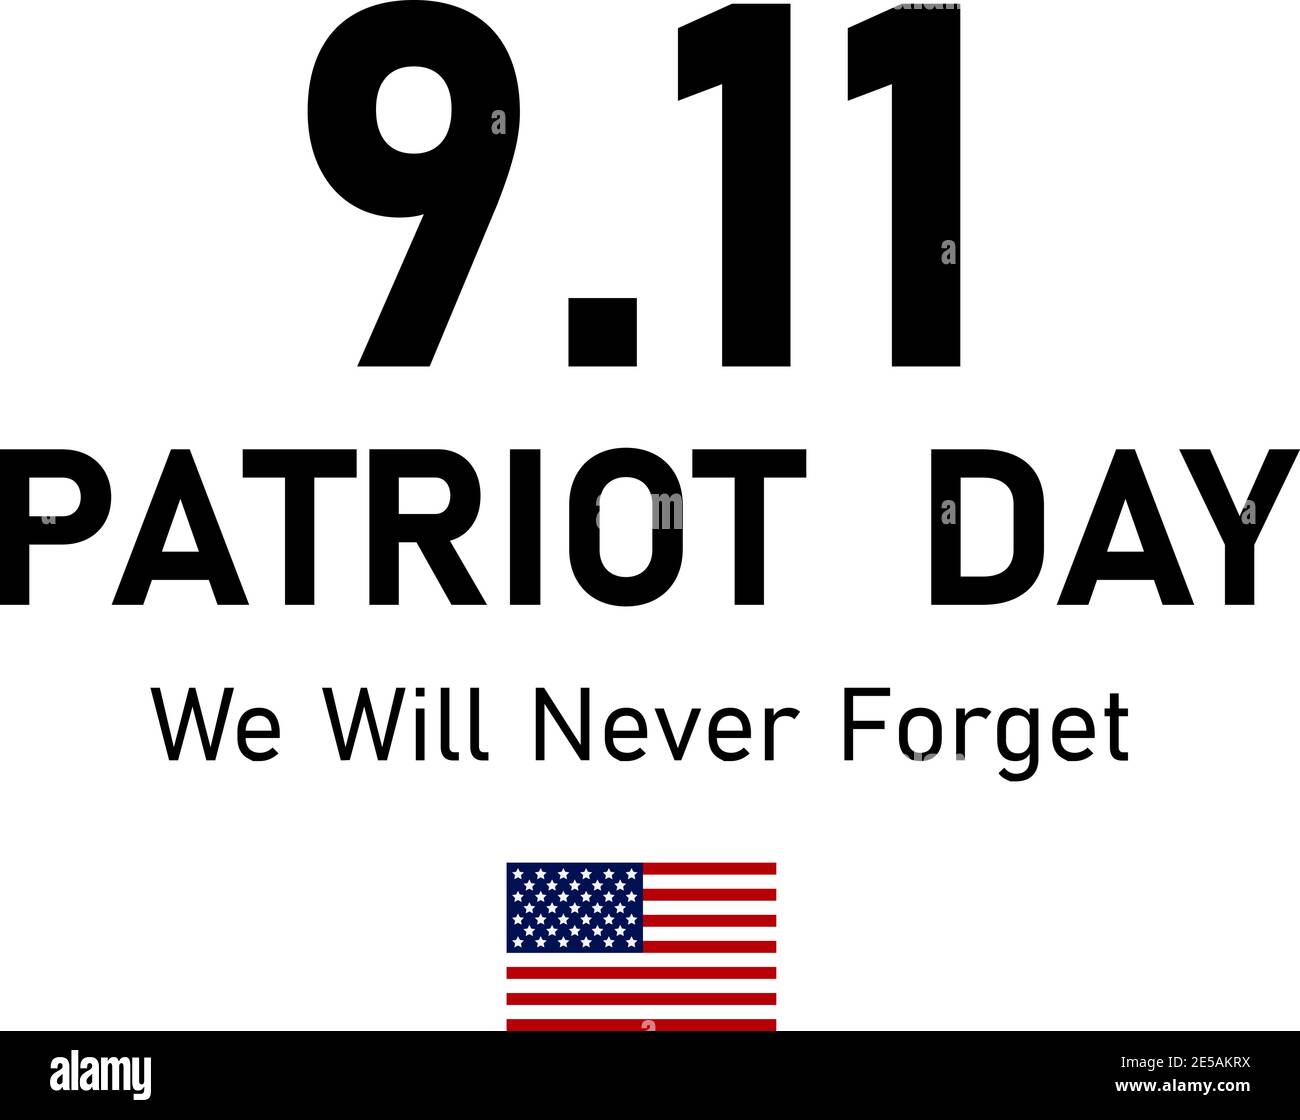 911 Patriot Day in den USA. Wir Werden Es Nie Vergessen. September 11. Patriot Day Poster oder Banner. Amerikanische Flagge. Eps10 Stock Vektor